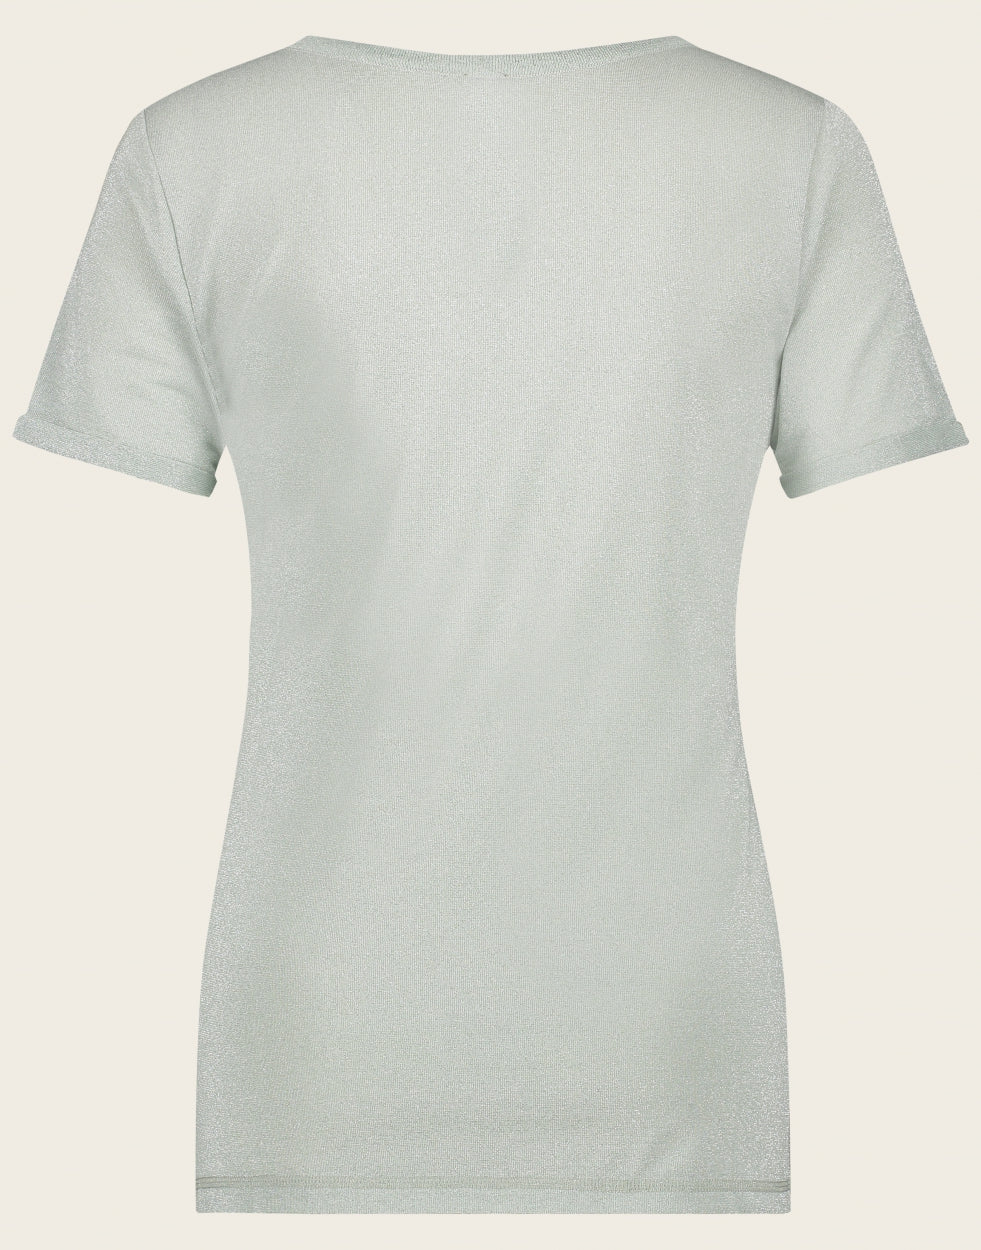 T shirt Leny | Aqua